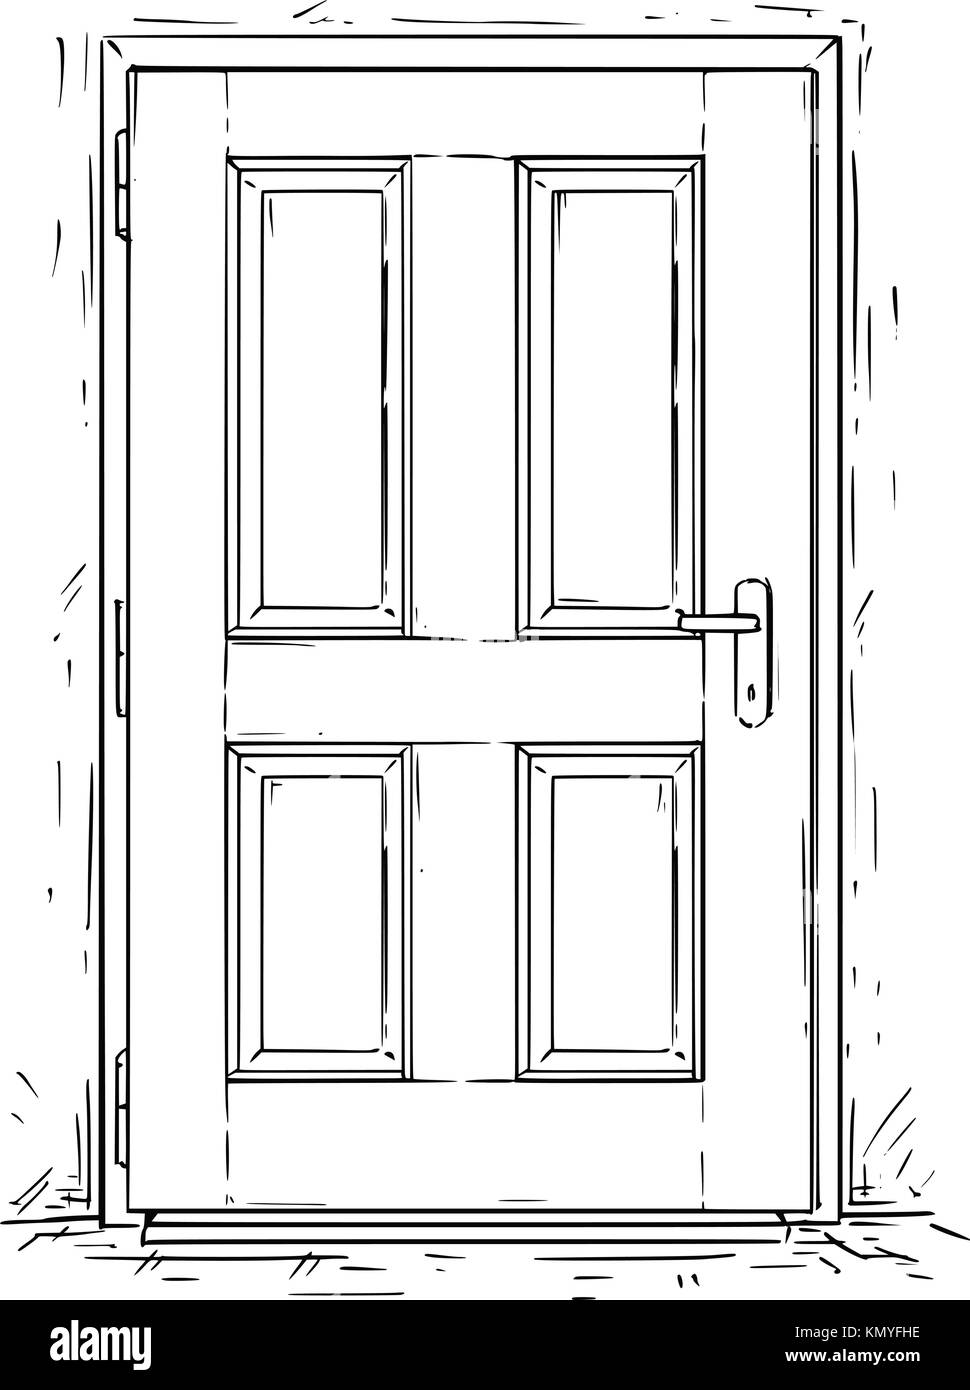 Cartoon Vektor doodle Zeichnung Abbildung: geschlossen Holz- entscheidung Tür. Stock Vektor